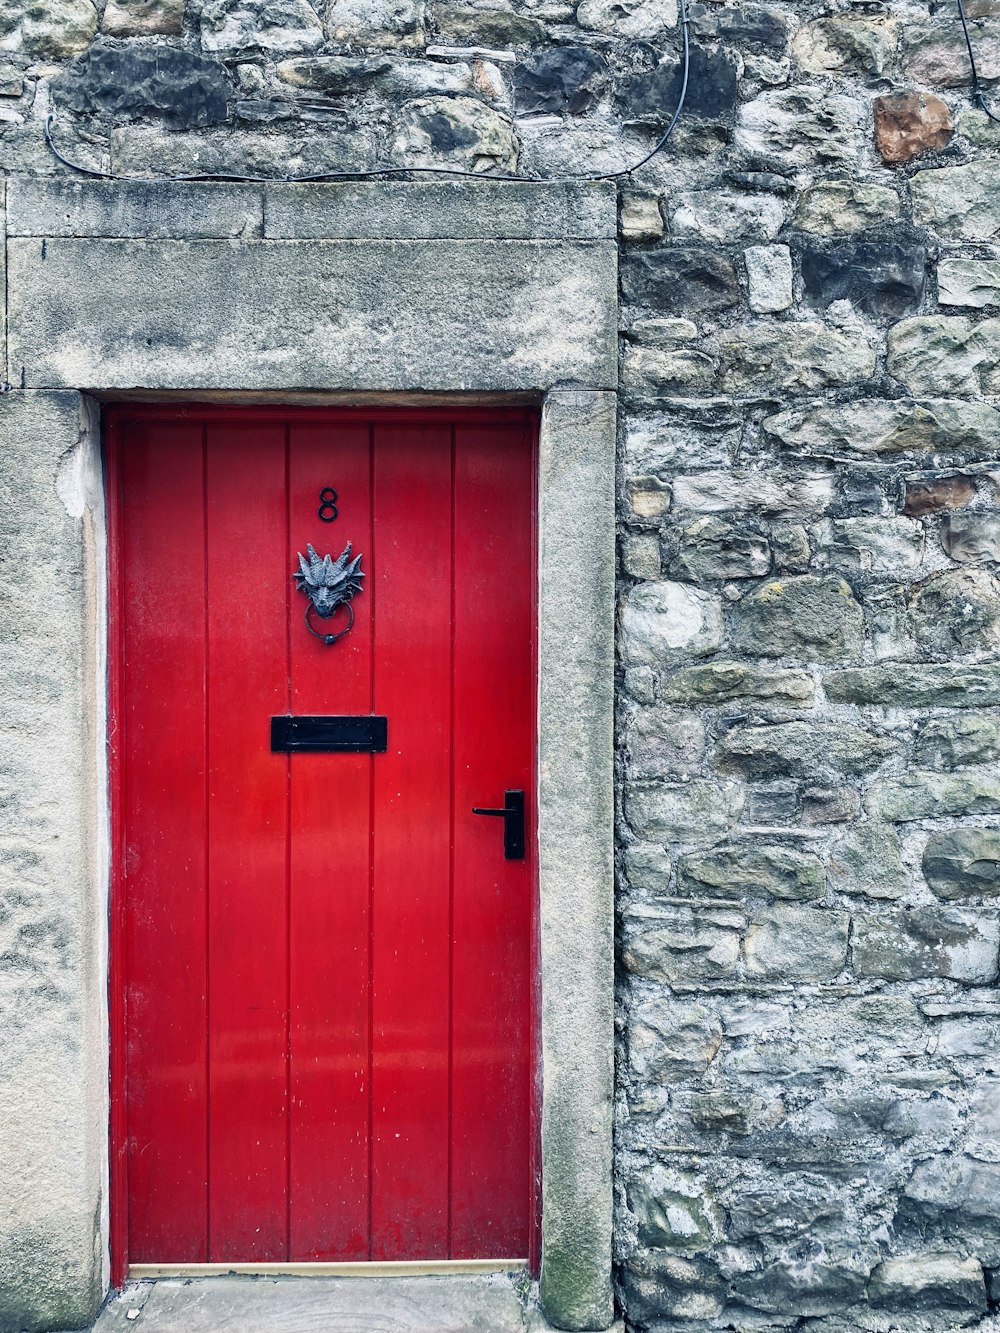 石造りの建物に赤い扉がある